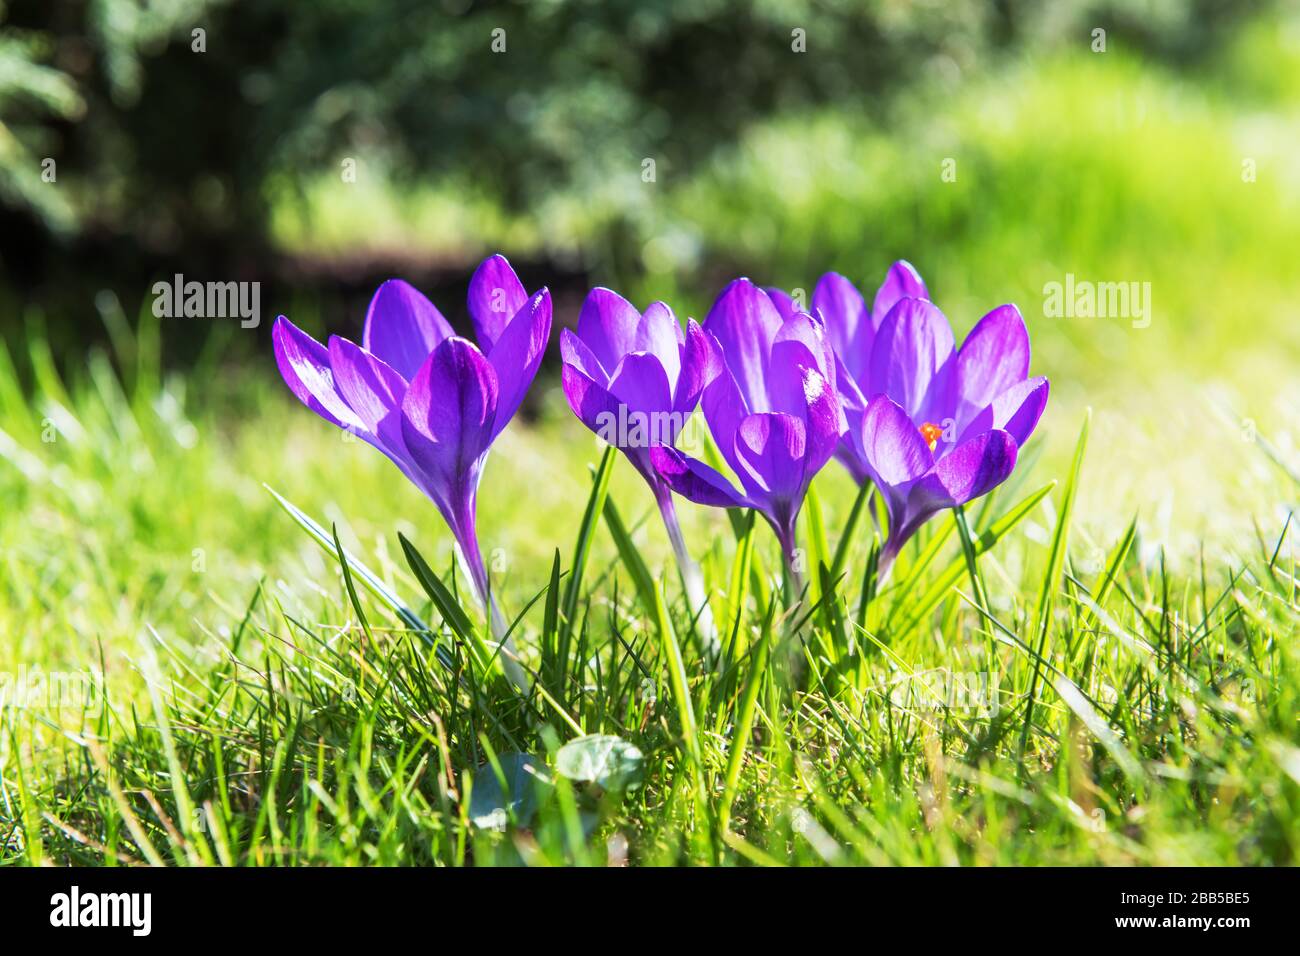 Primavera fiore croco su verde erba closeup. Fotografia di natura Foto Stock